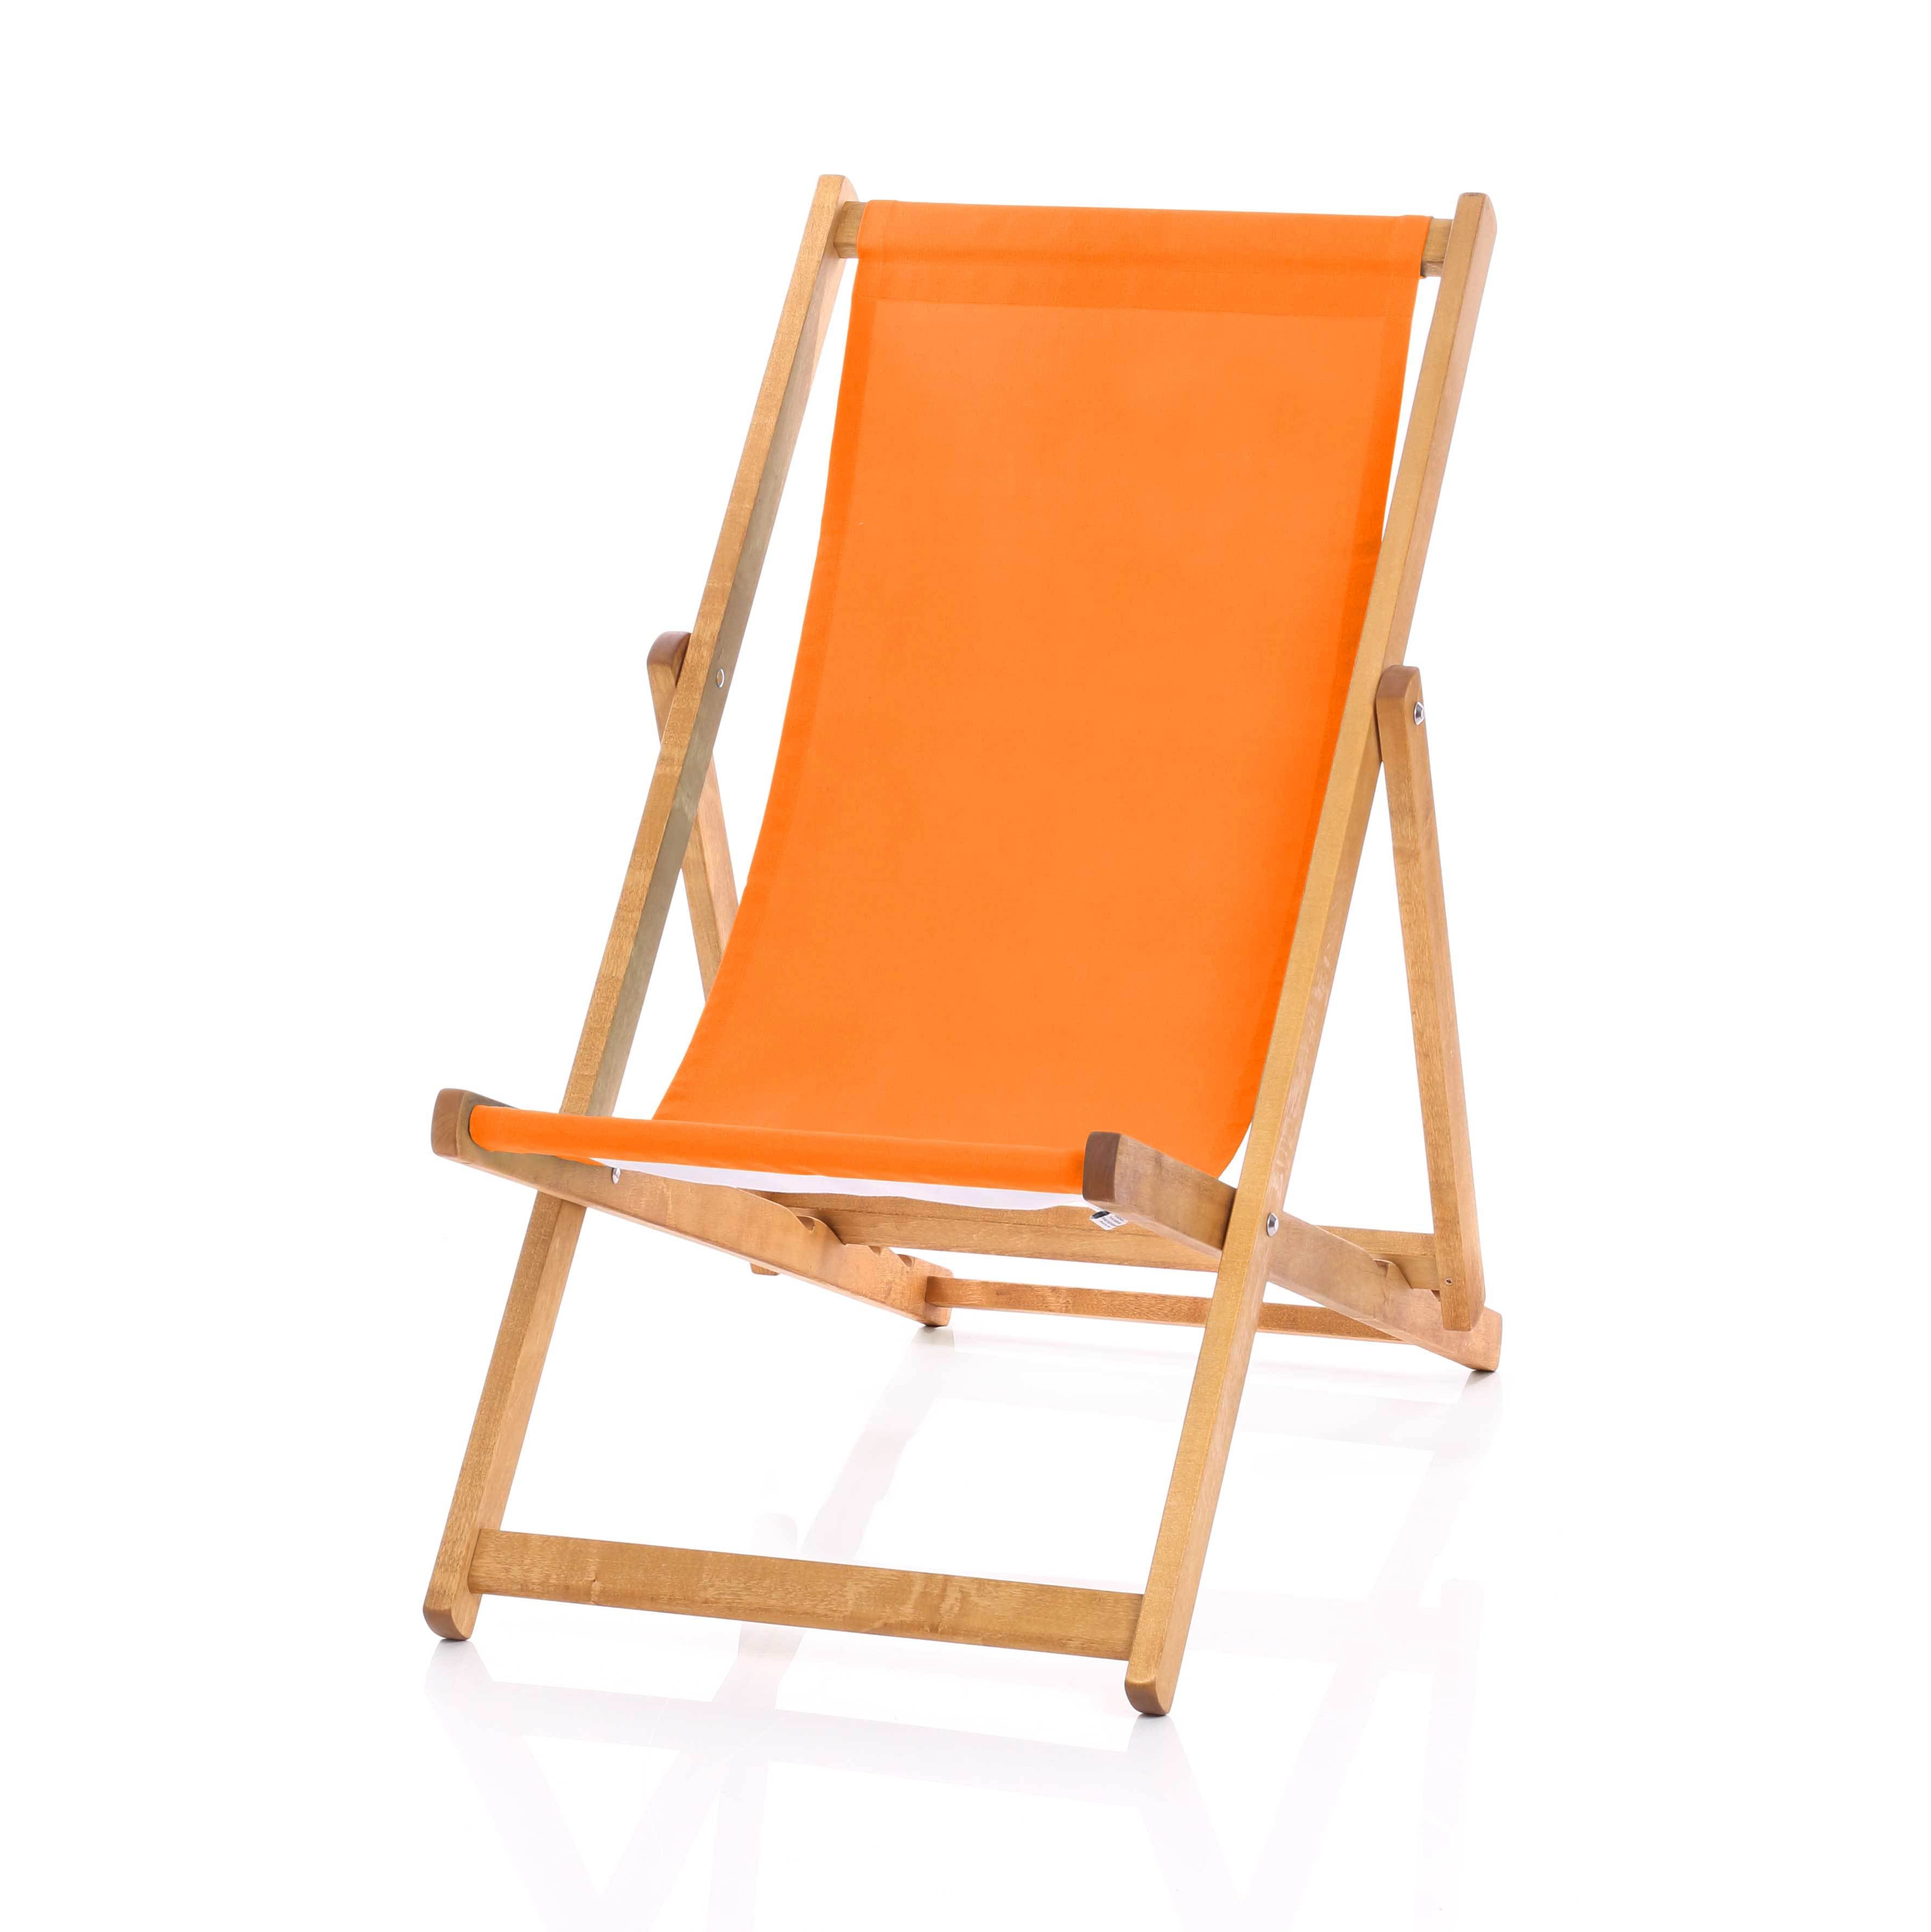 Hardwood Deckchair - Plain Orange